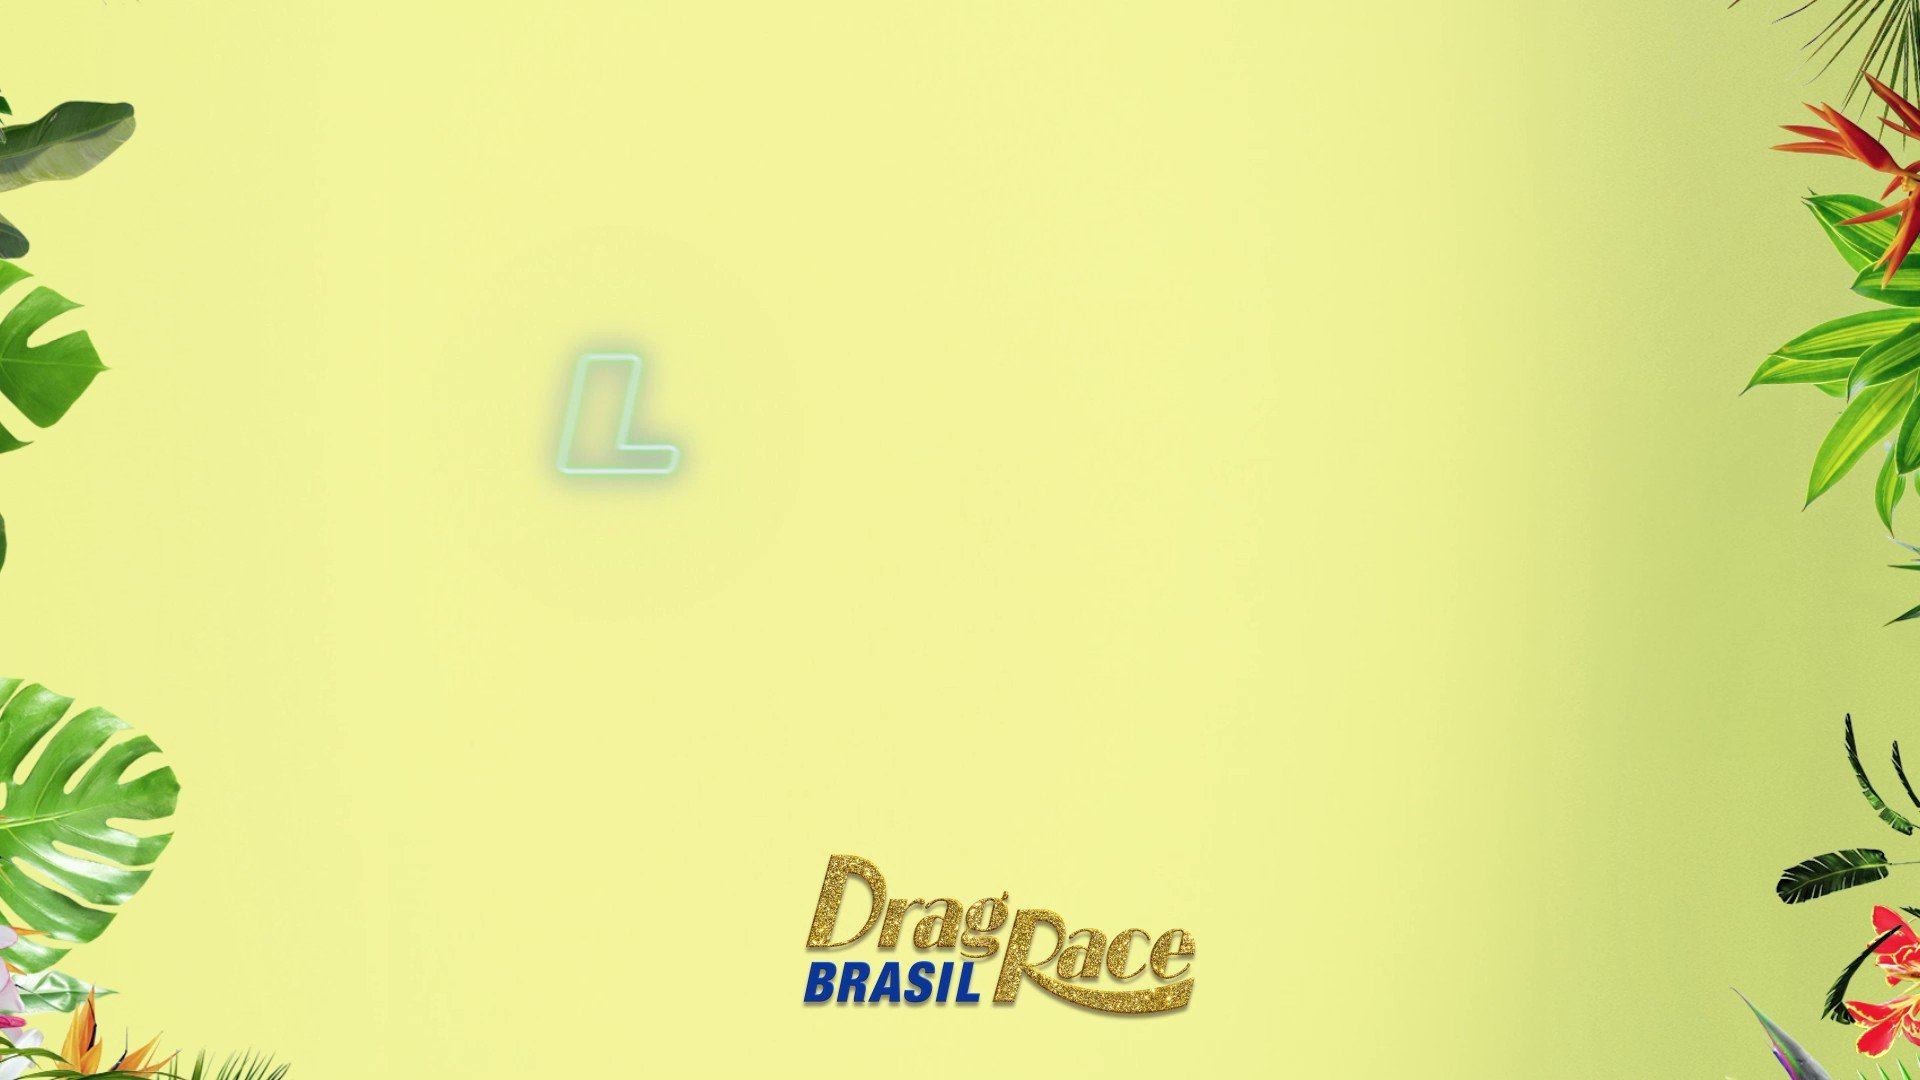 Drag Race Brasil on X: O nosso Drag Race já está entre nós, bebê 😭🥹  #DragRaceBrasil às quartas-feiras, 21h, na @MTVBrasil. Os episódios são  disponibilizados semanalmente no @paramountplusbr para todo o Brasil